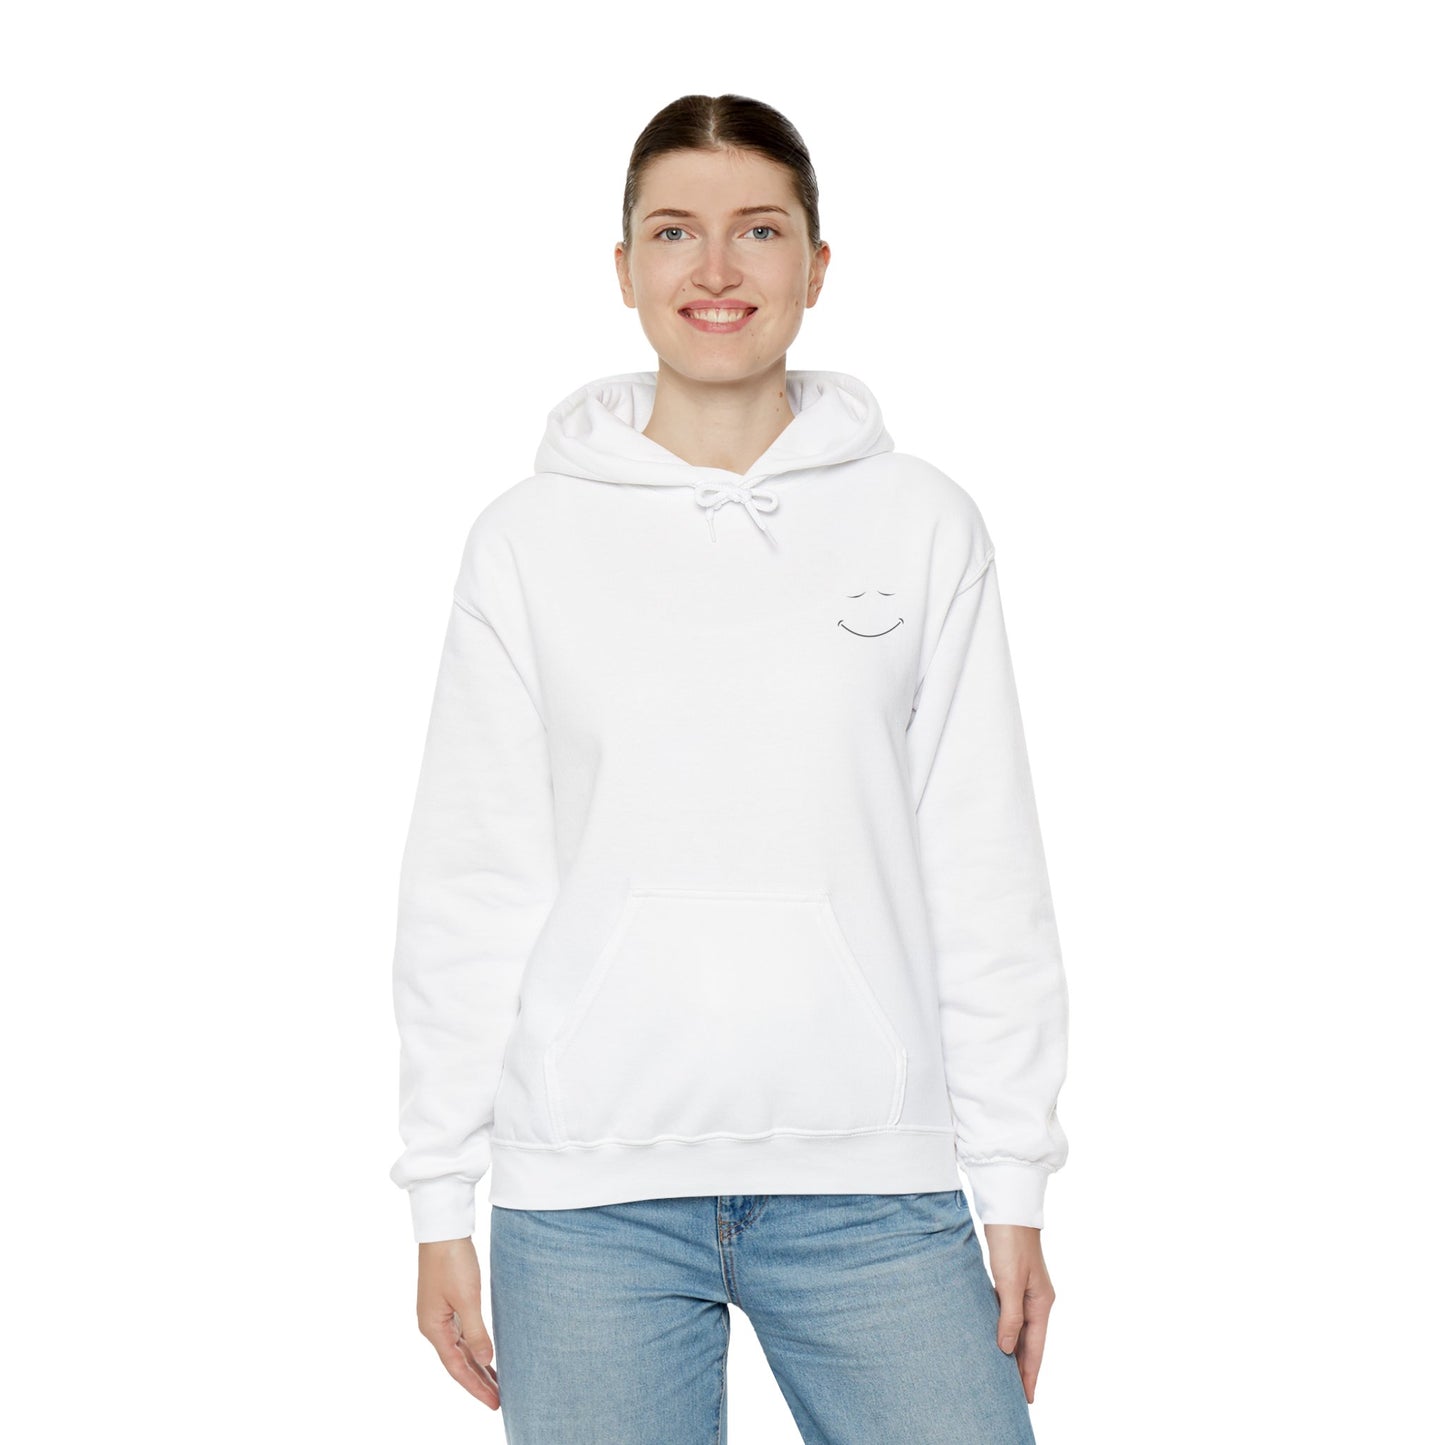 Humor Haven Apparel™: You Matter Hooded Sweatshirt